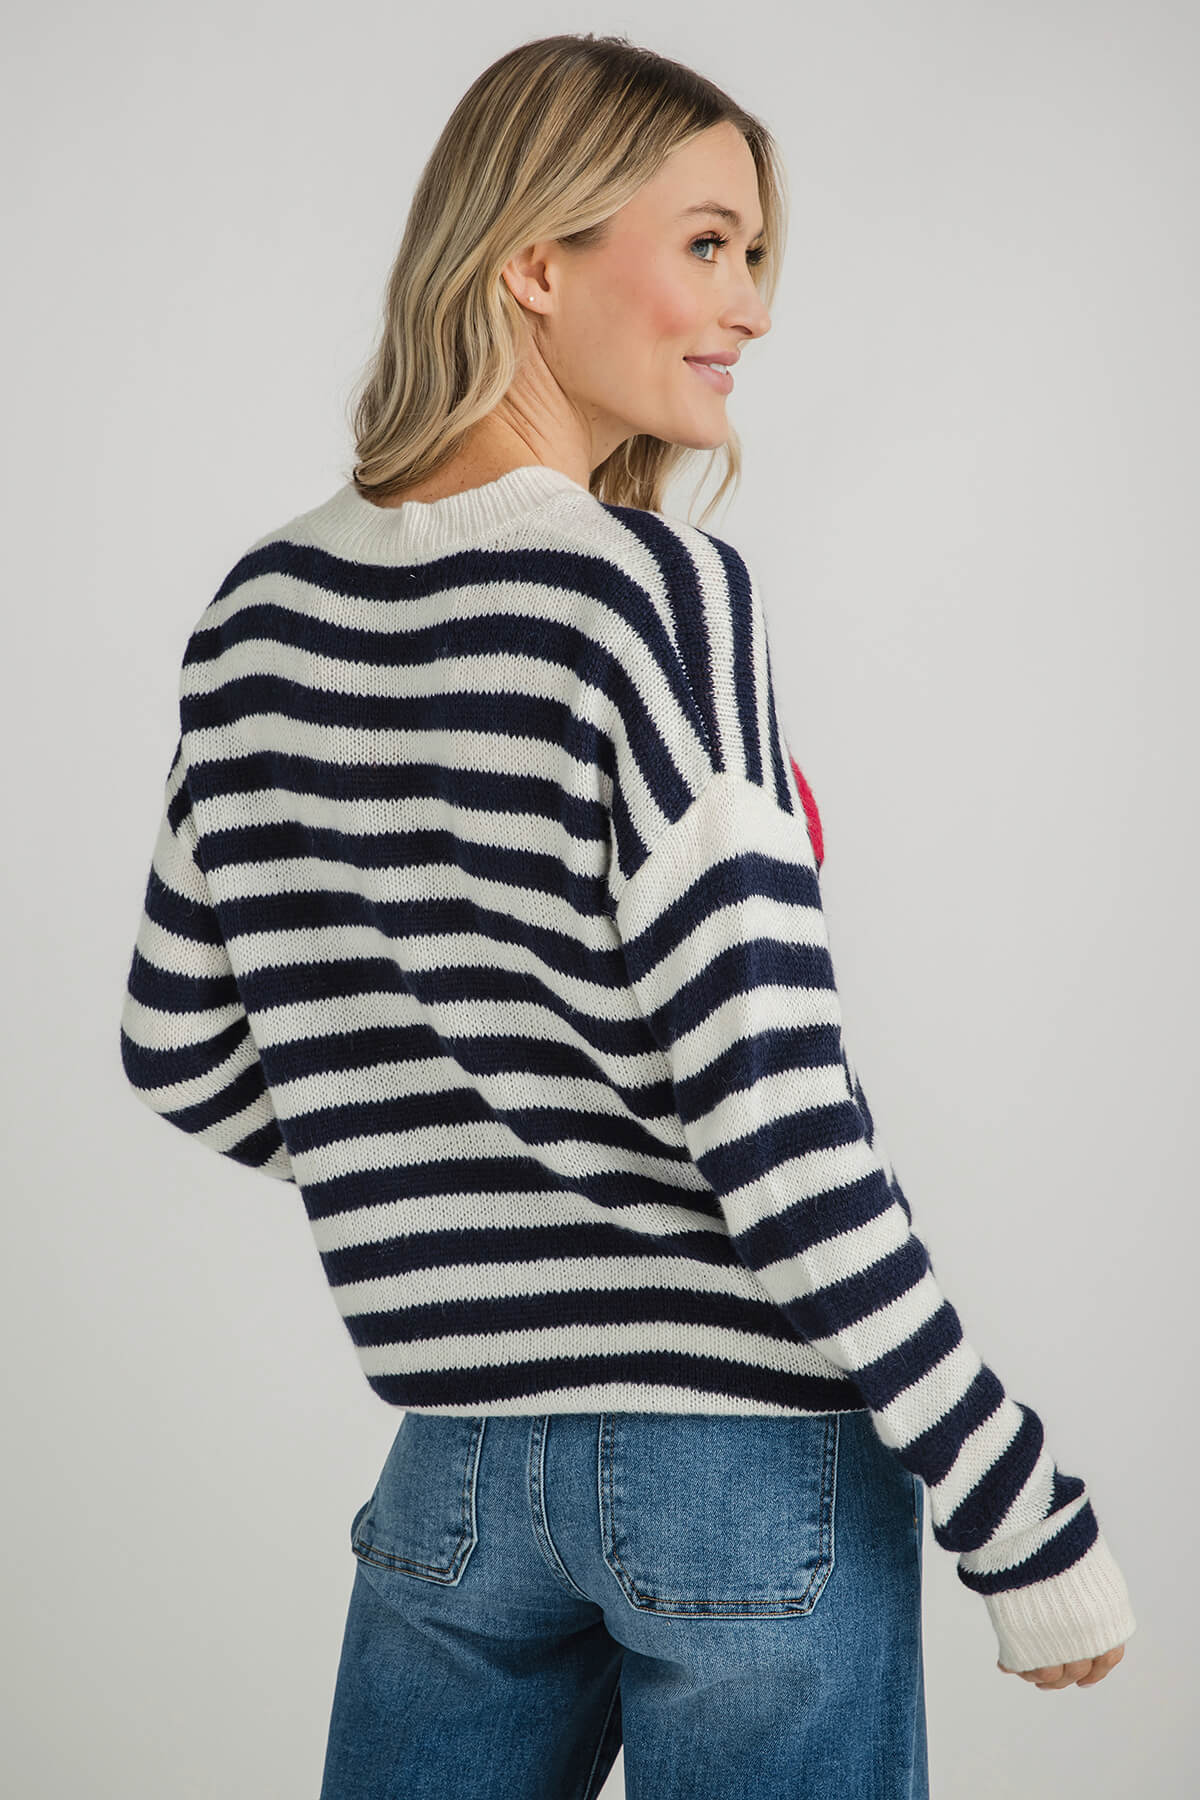 Cezele Heart Stripe Long Sleeve Sweater